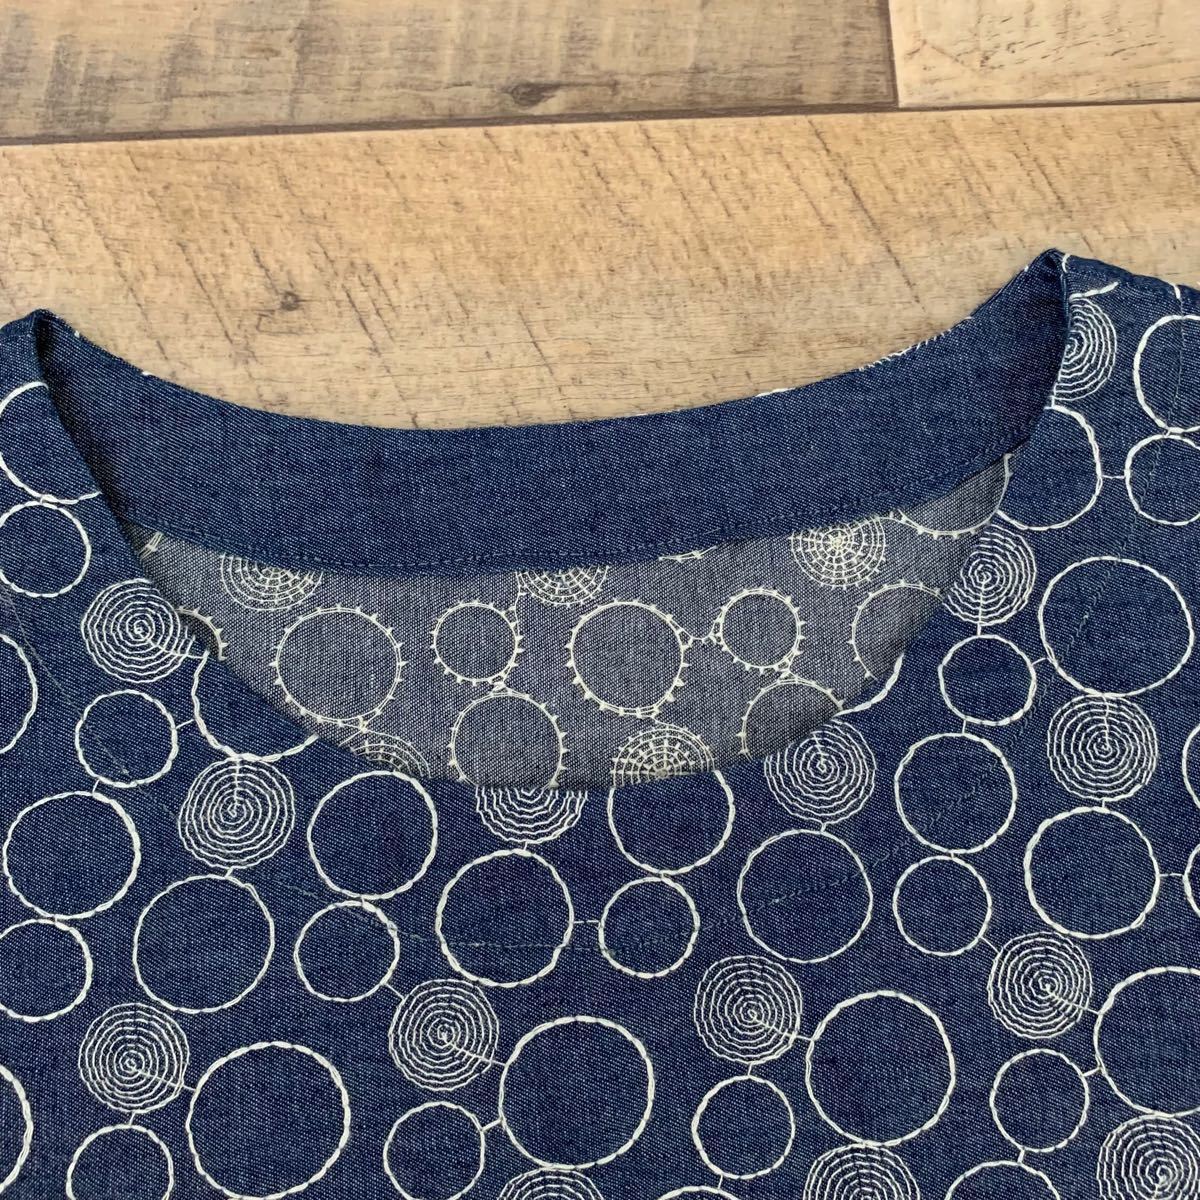 ハンドメイド デニム 刺繍 裾 スカラップ ワンピース チュニック フリーサイズ